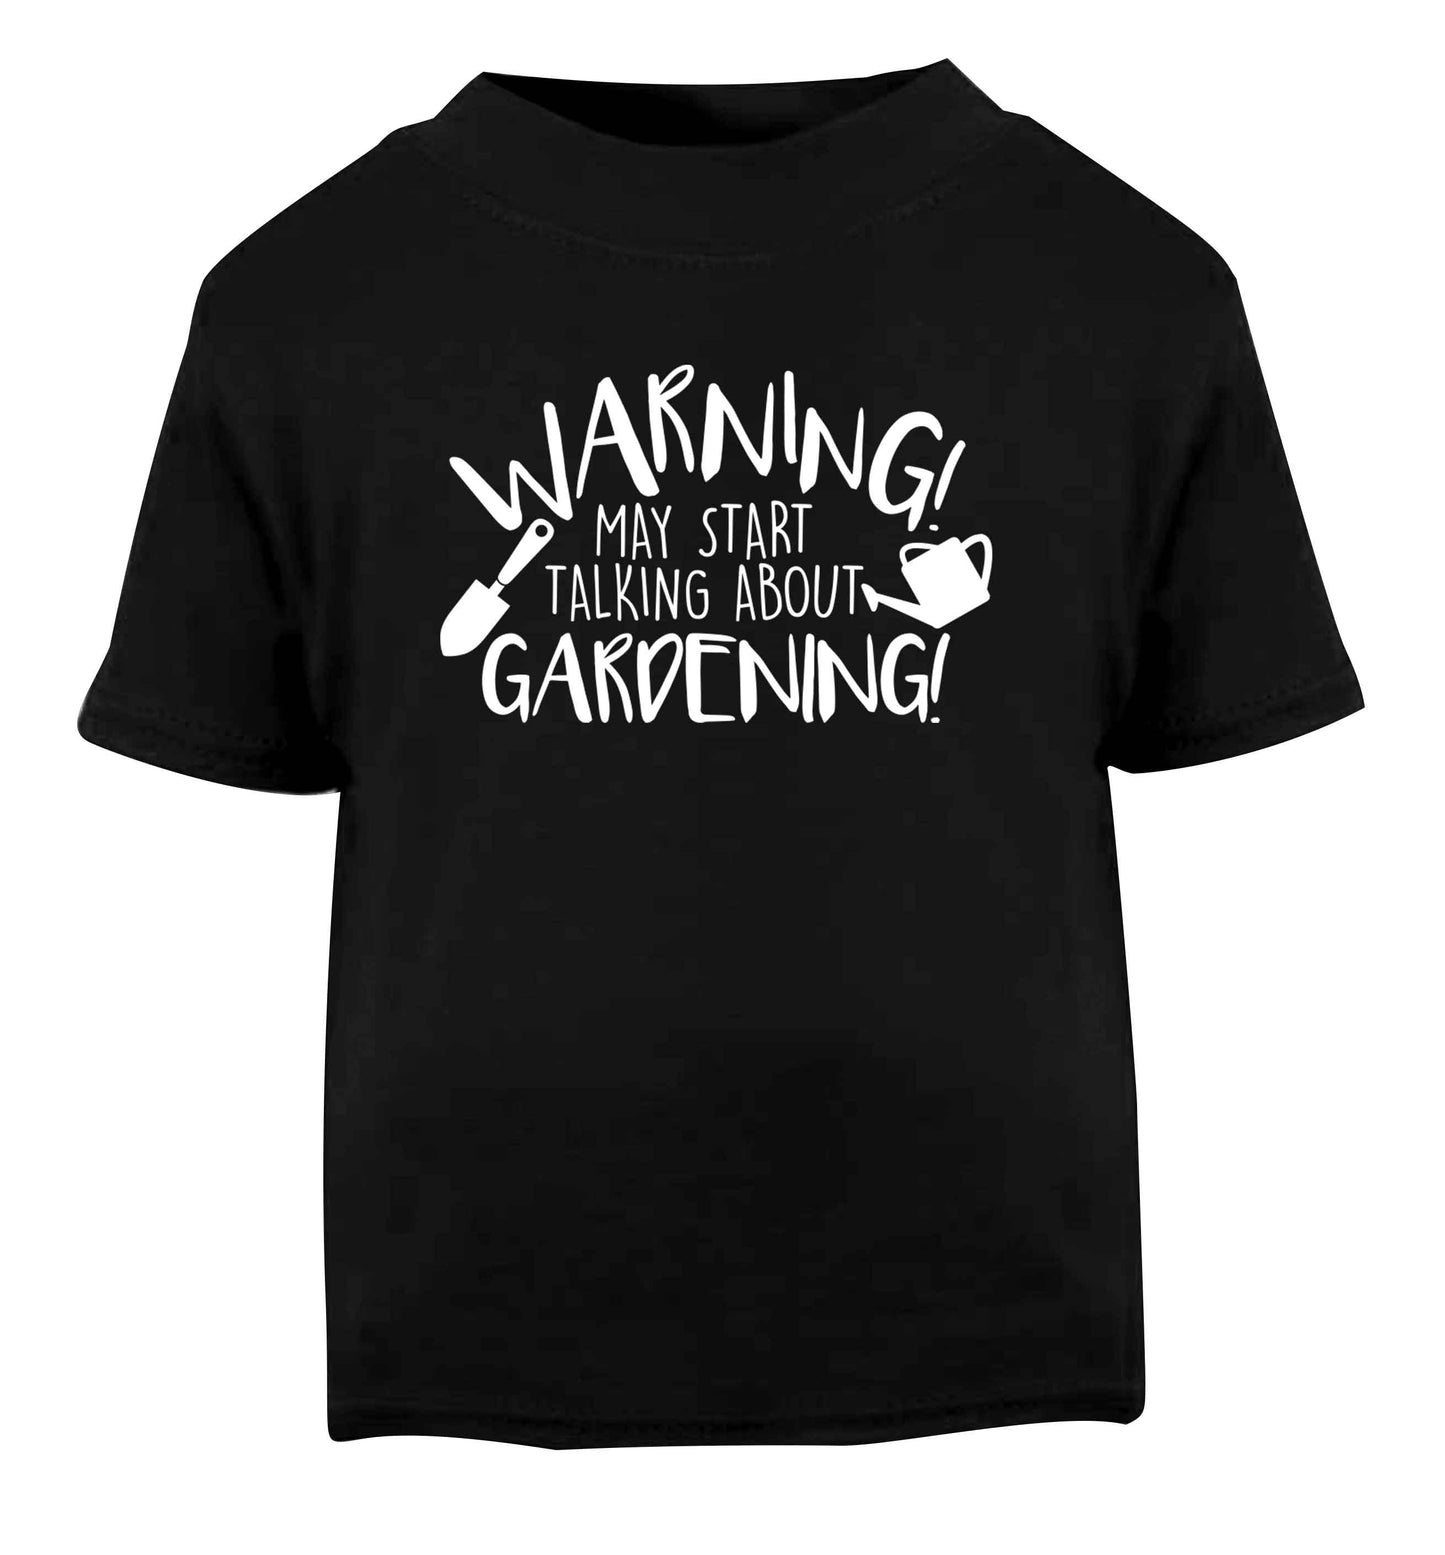 Warning may start talking about gardening Black Baby Toddler Tshirt 2 years